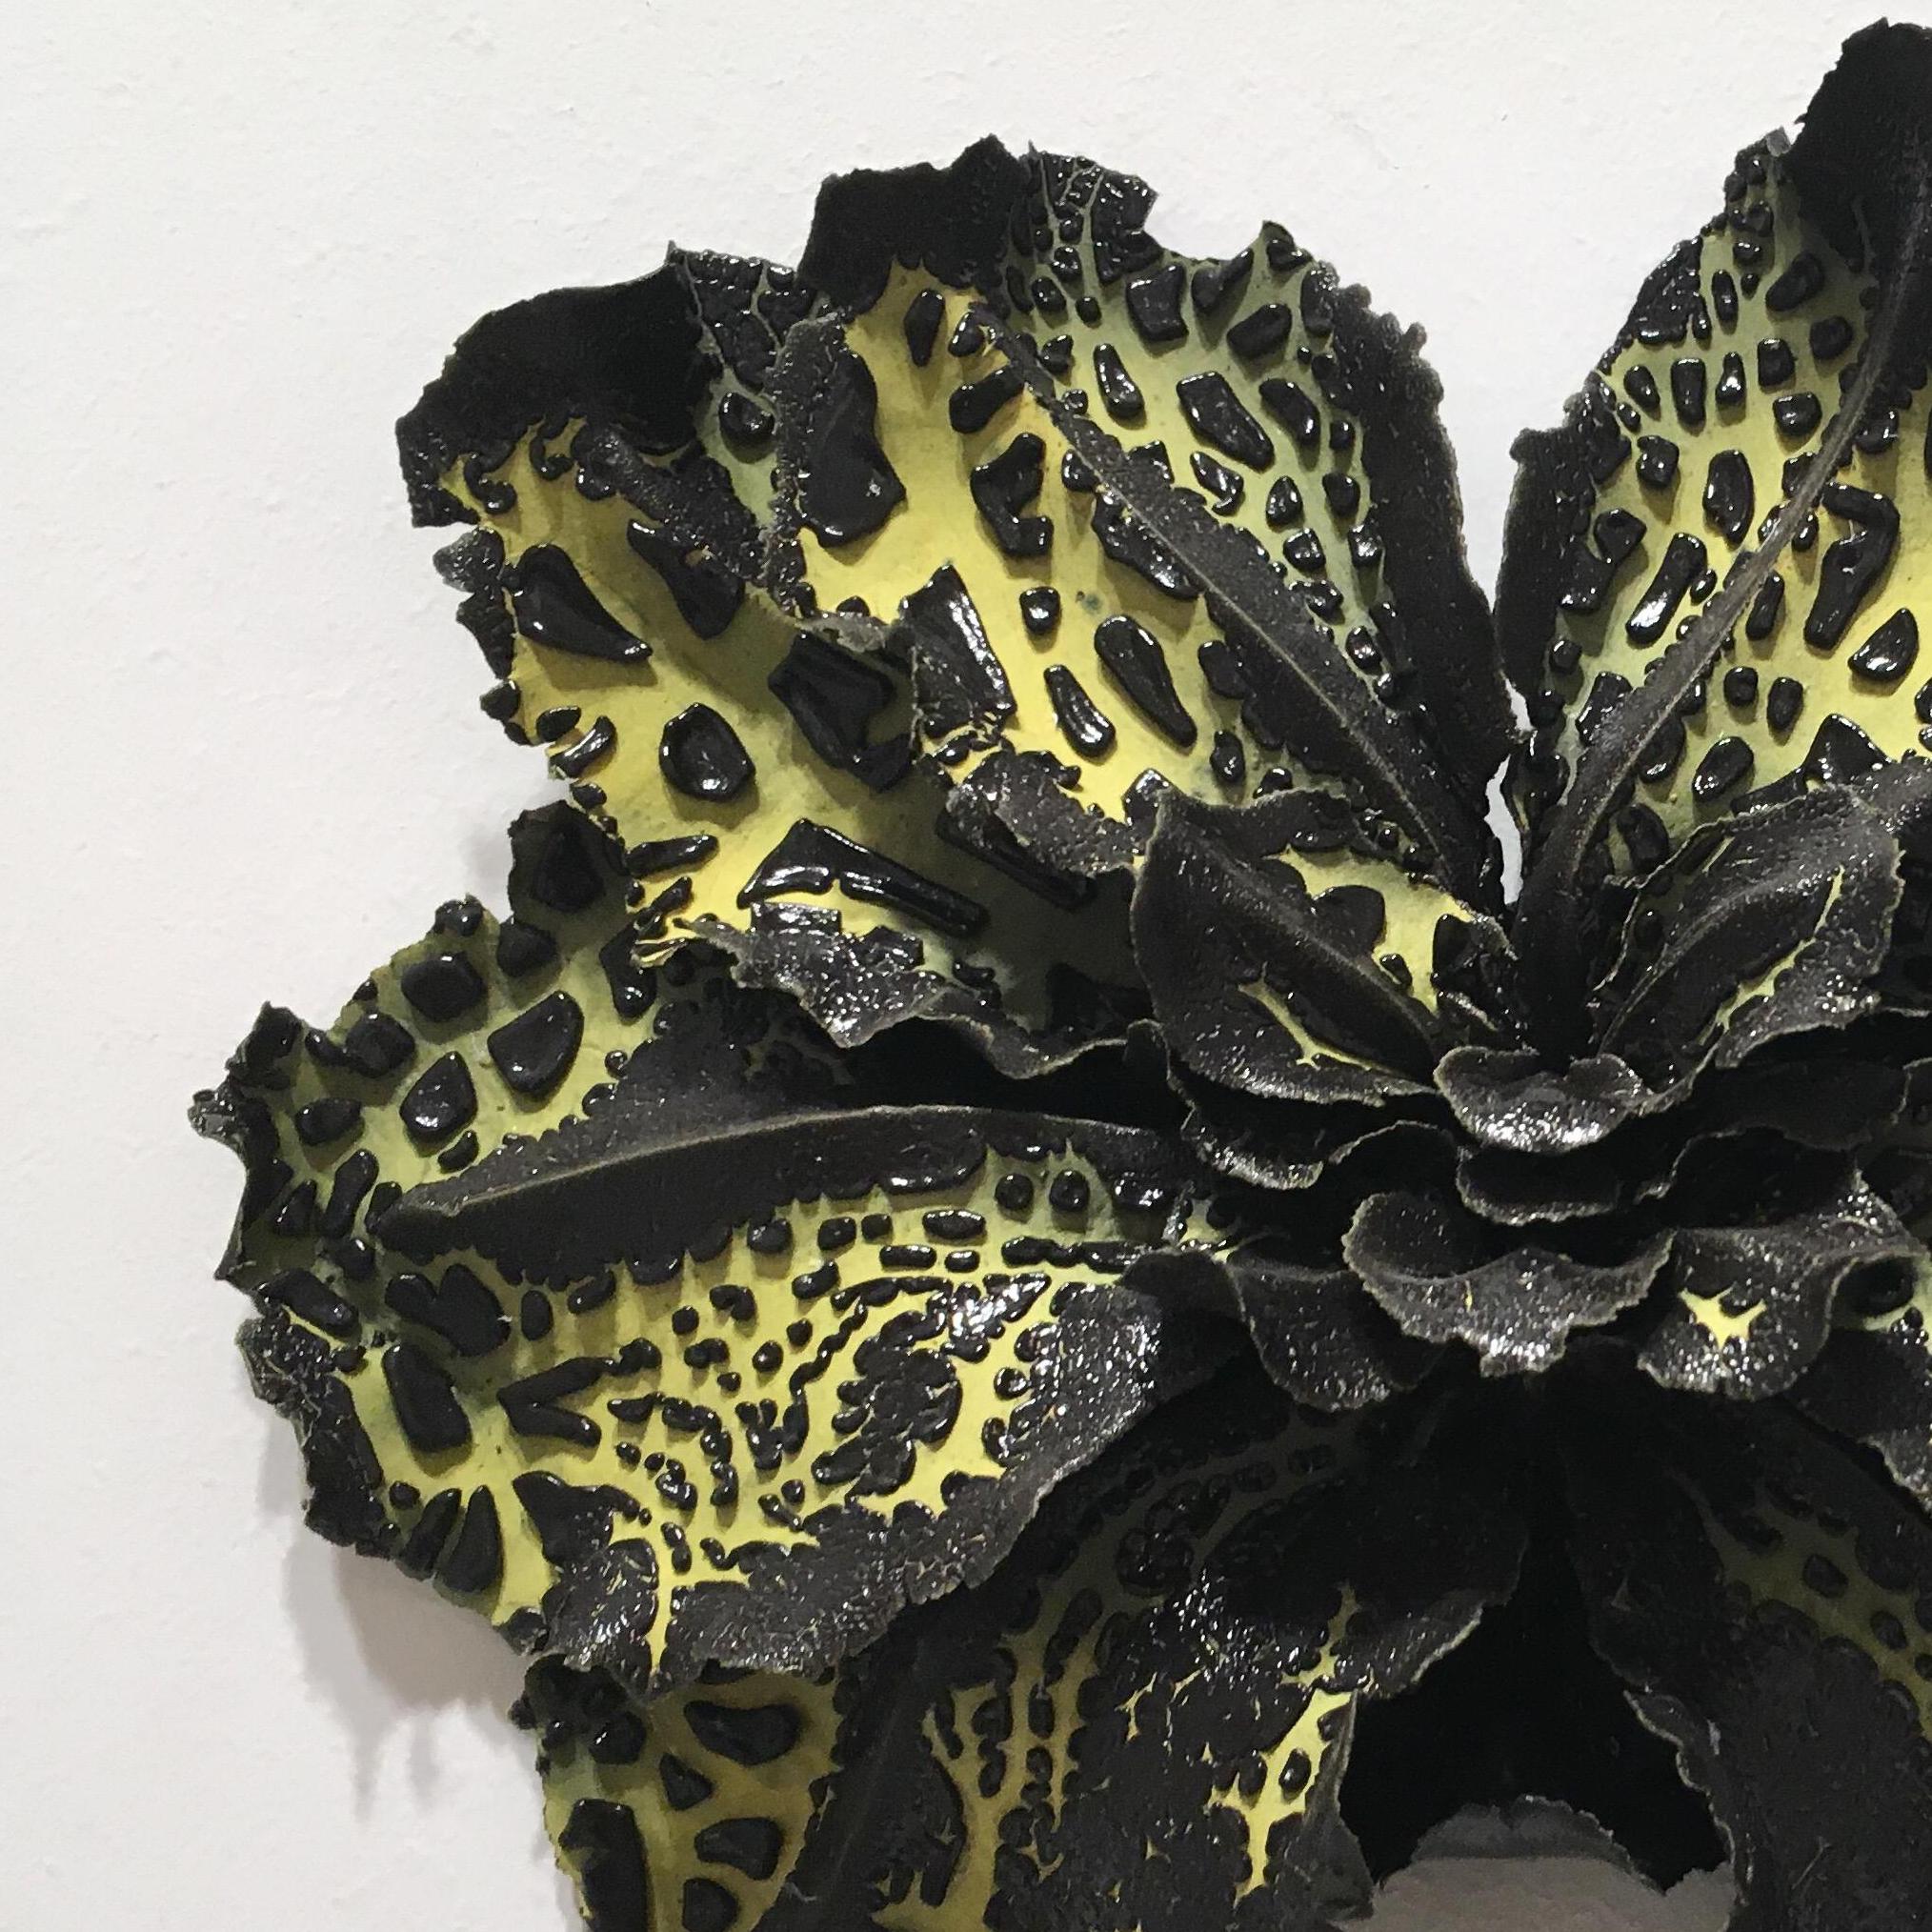 Christopher Adams, Untitled, Biomorphic ceramic sculpture, 2016 2